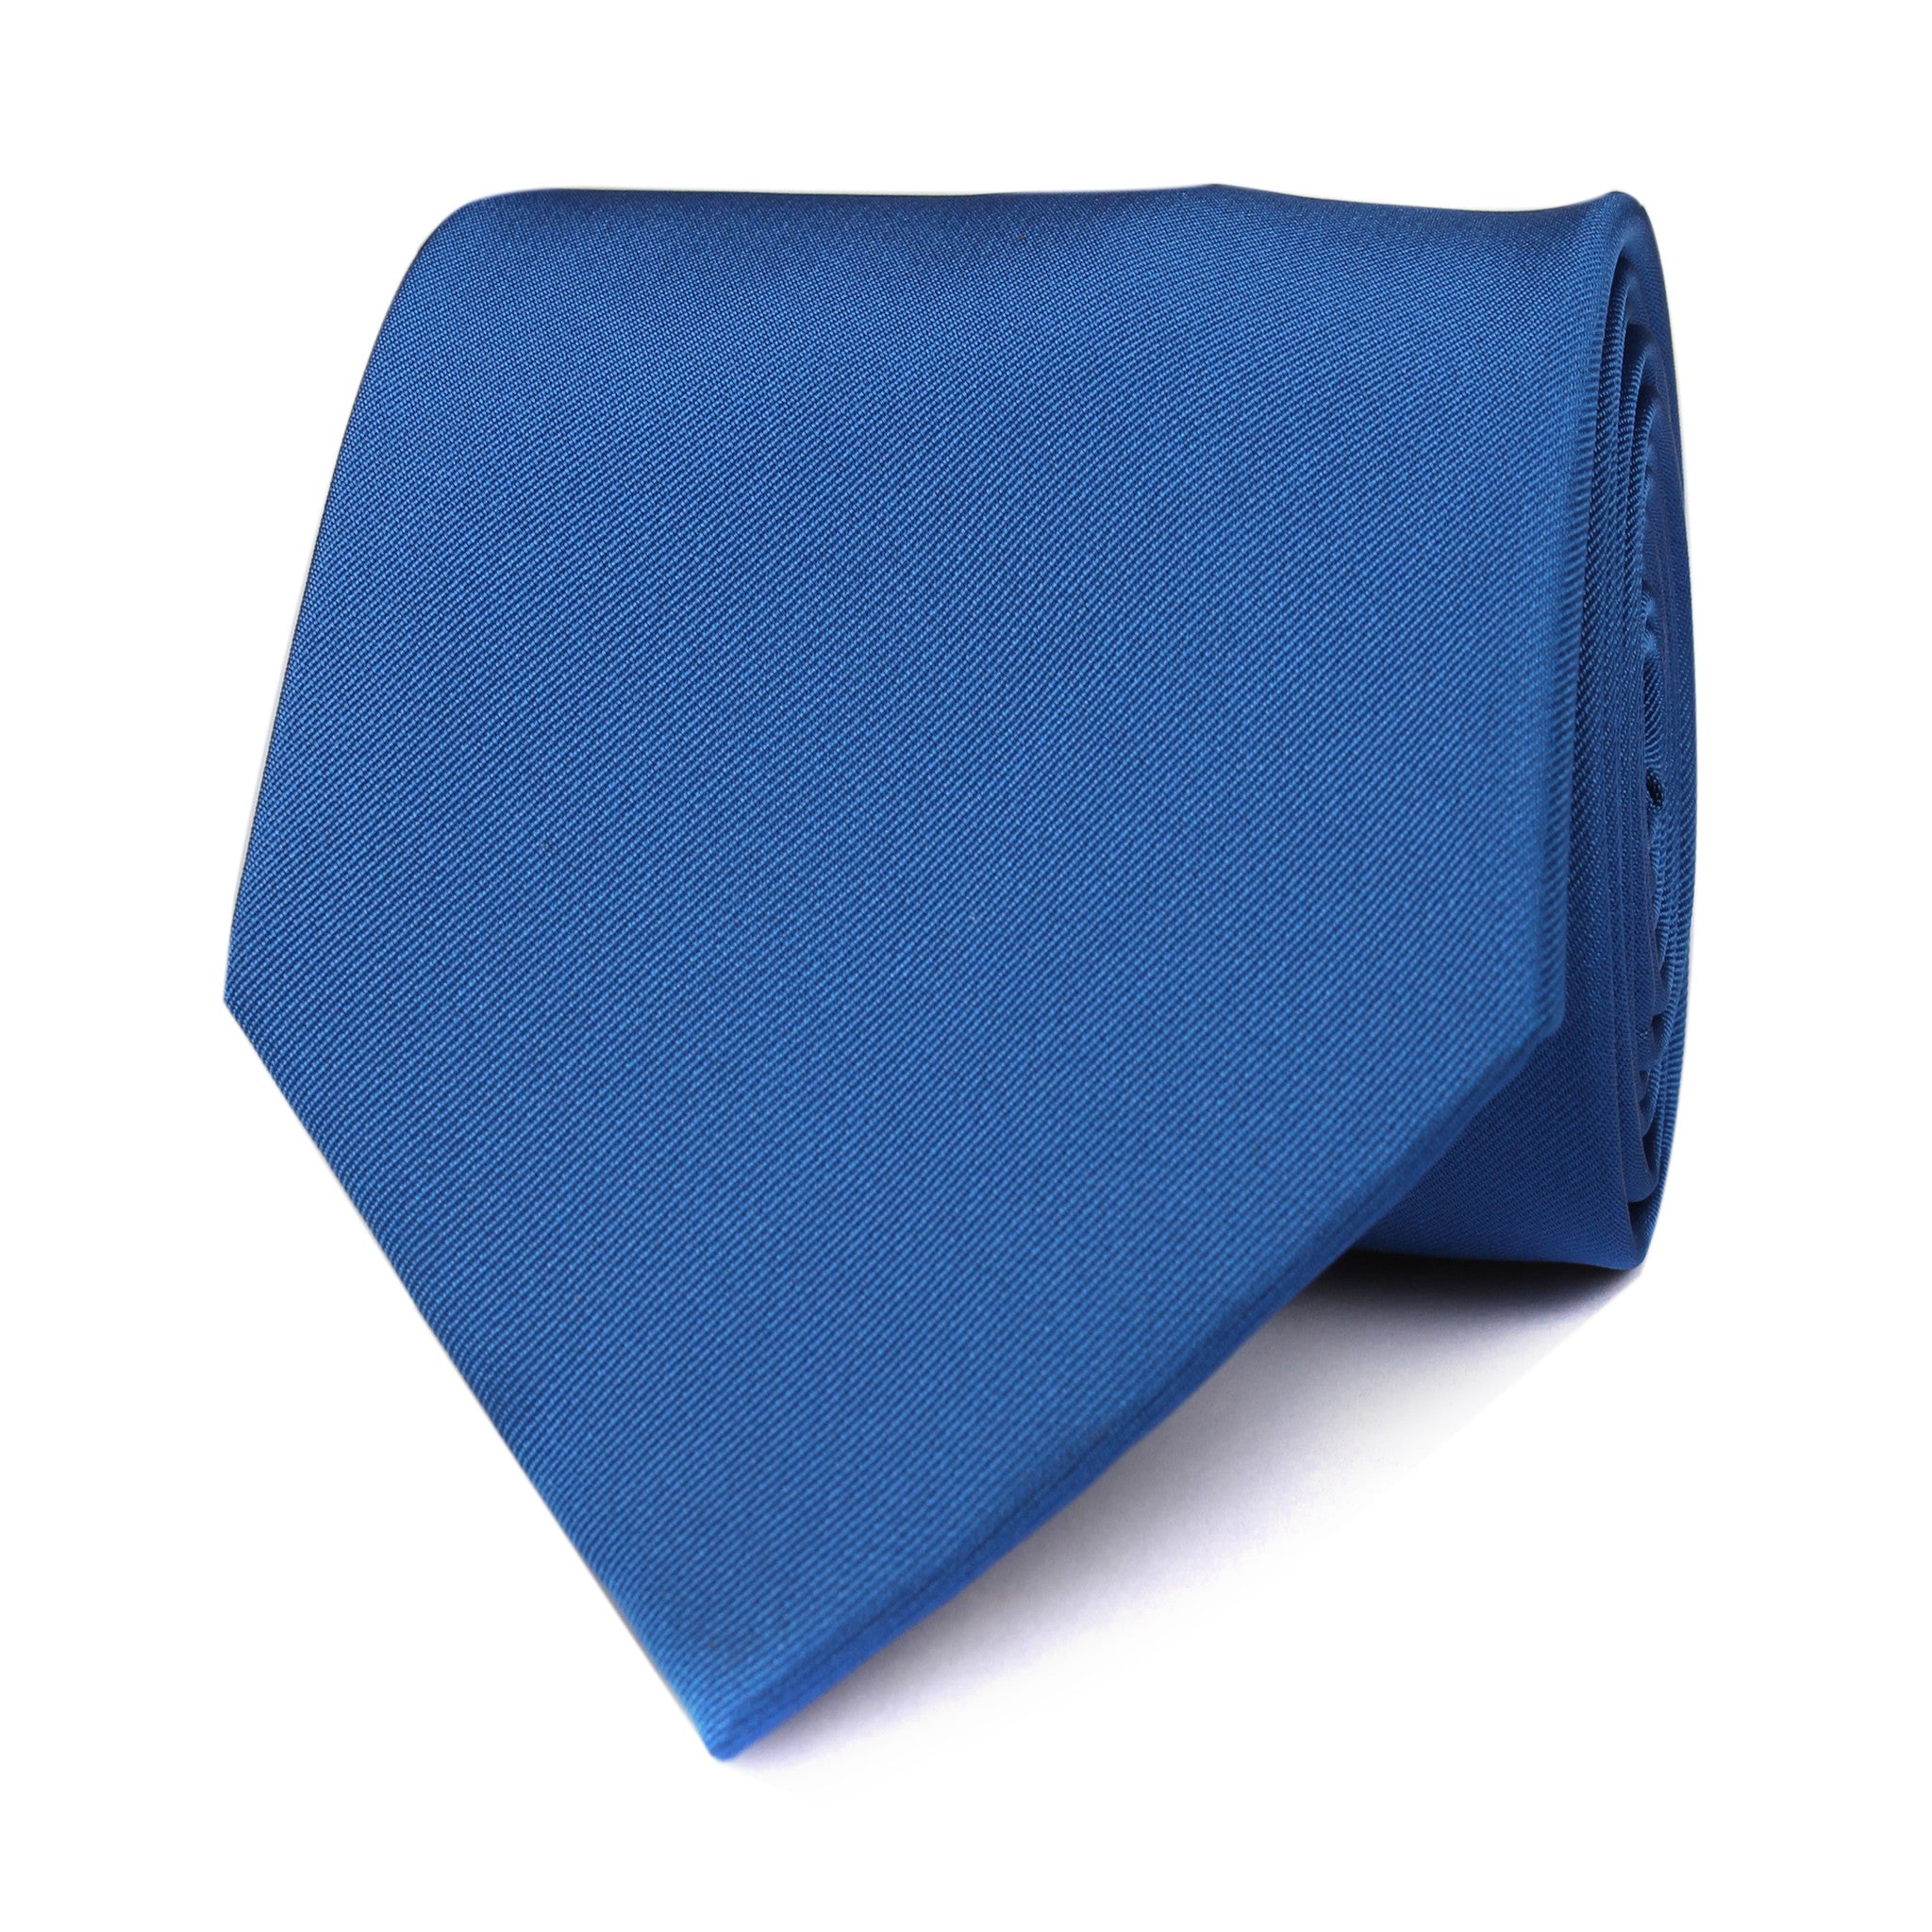 Sapphire Blue Necktie | Men Tie Ties Neckties Shop Online Australia | OTAA